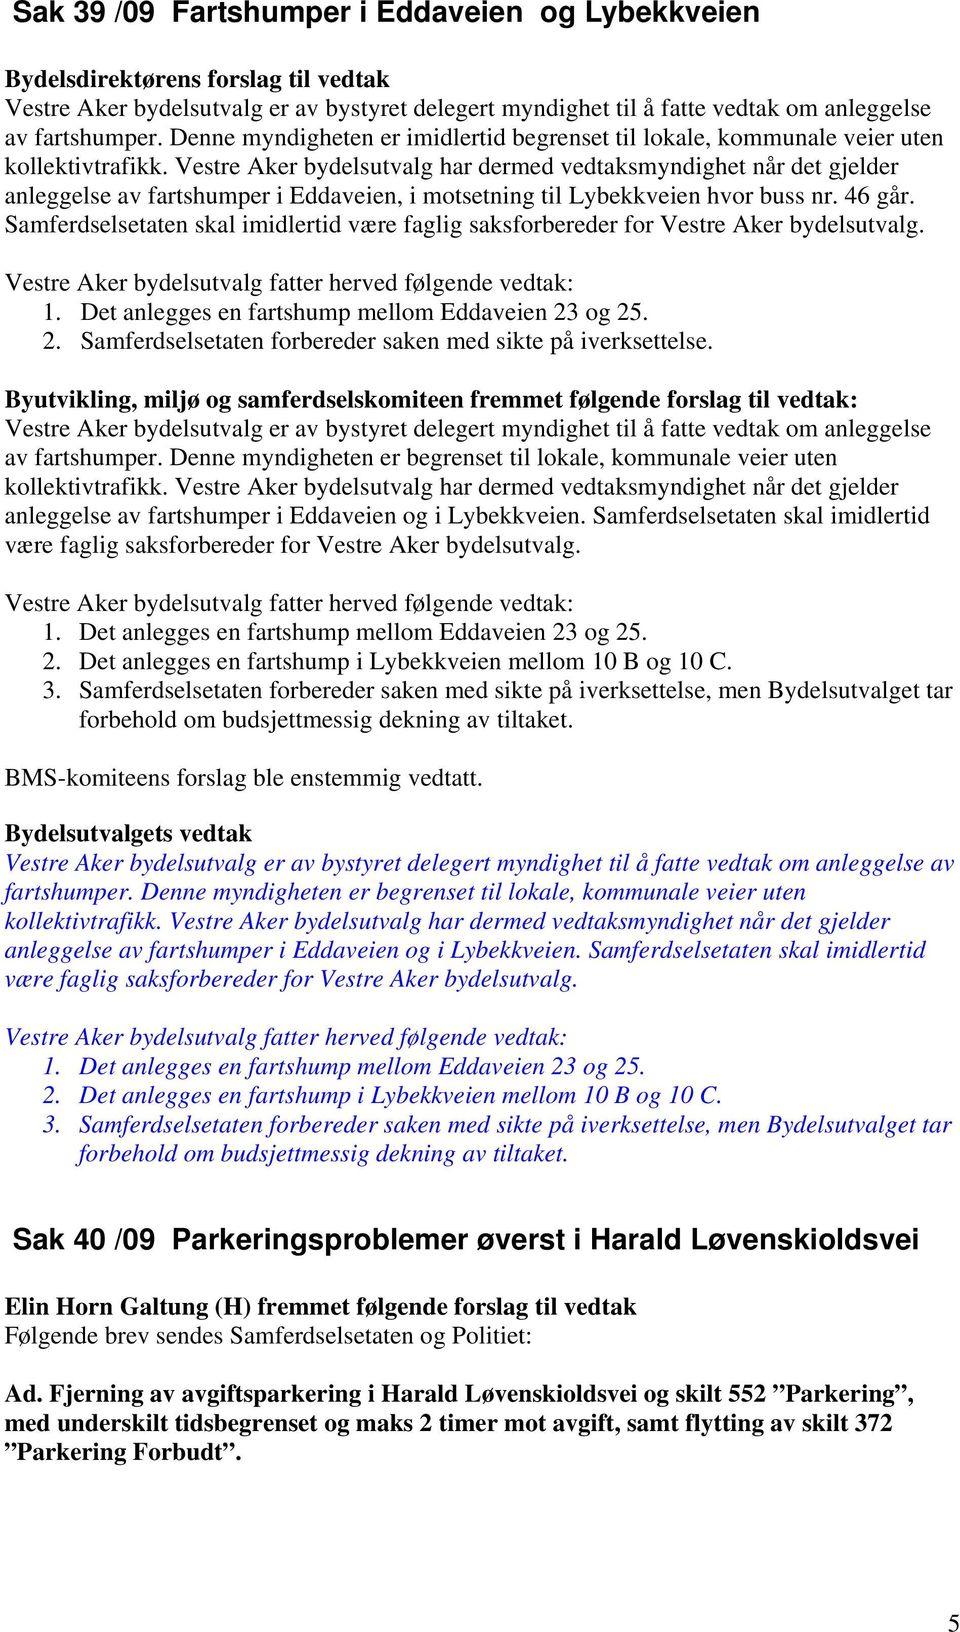 Vestre Aker bydelsutvalg har dermed vedtaksmyndighet når det gjelder anleggelse av fartshumper i Eddaveien, i motsetning til Lybekkveien hvor buss nr. 46 går.